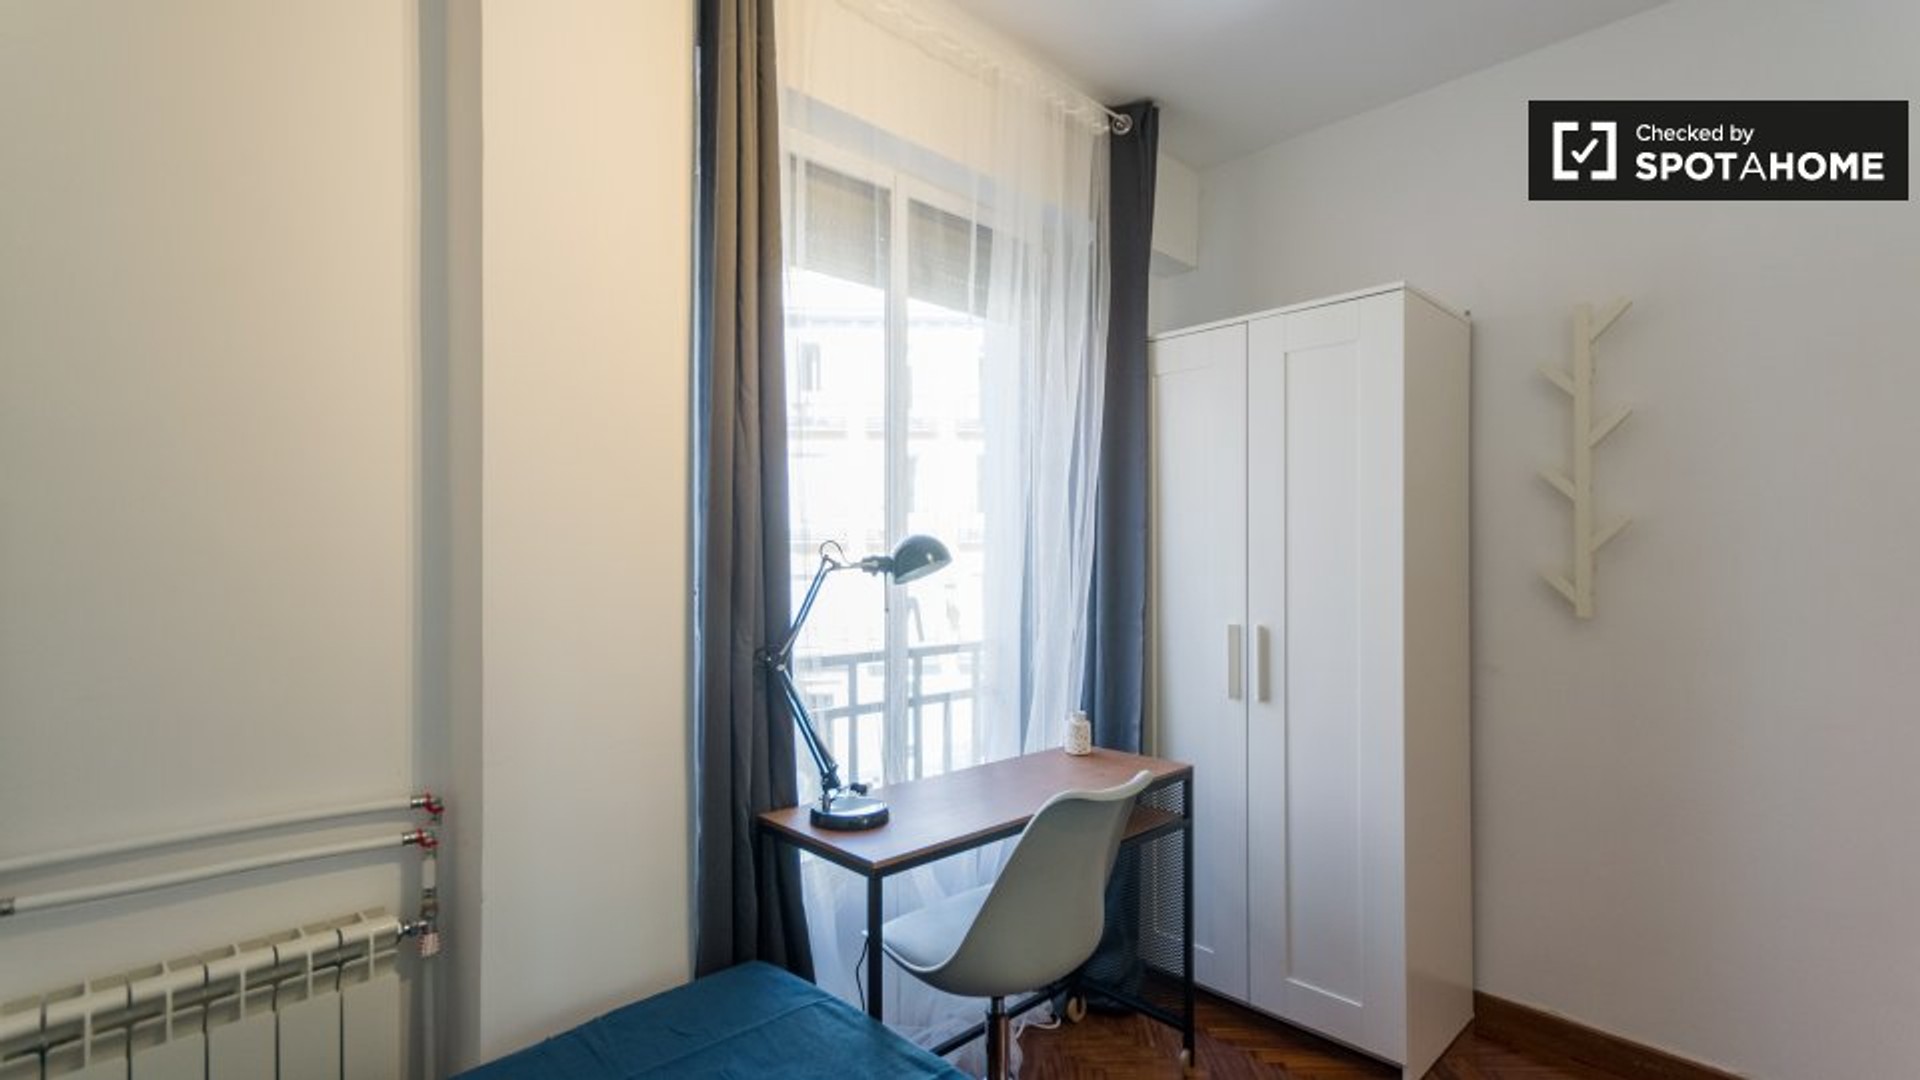 Quarto para alugar num apartamento partilhado em Madrid